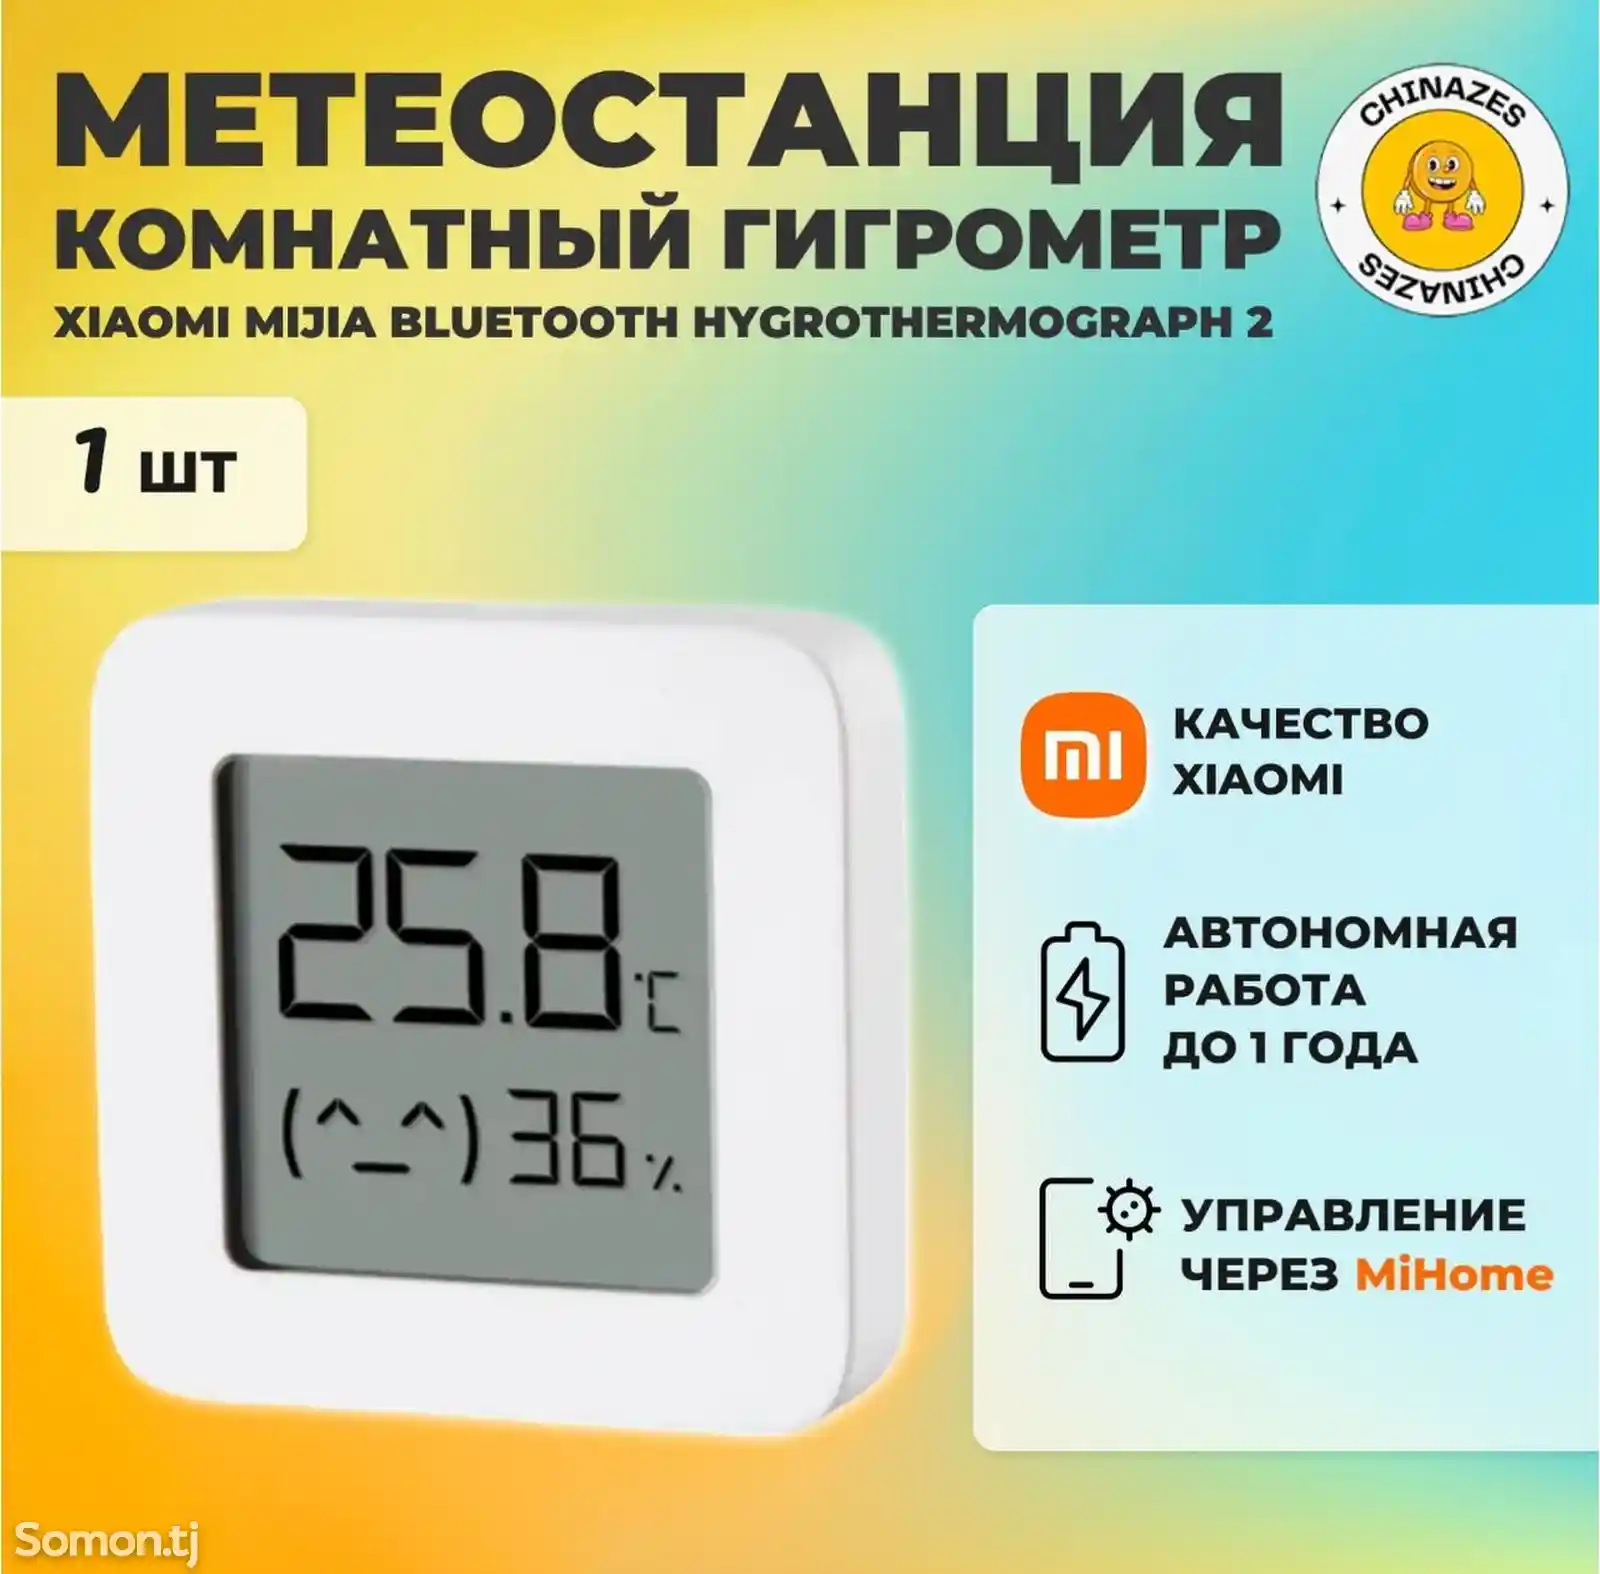 Датчик термометр температуры и влажности